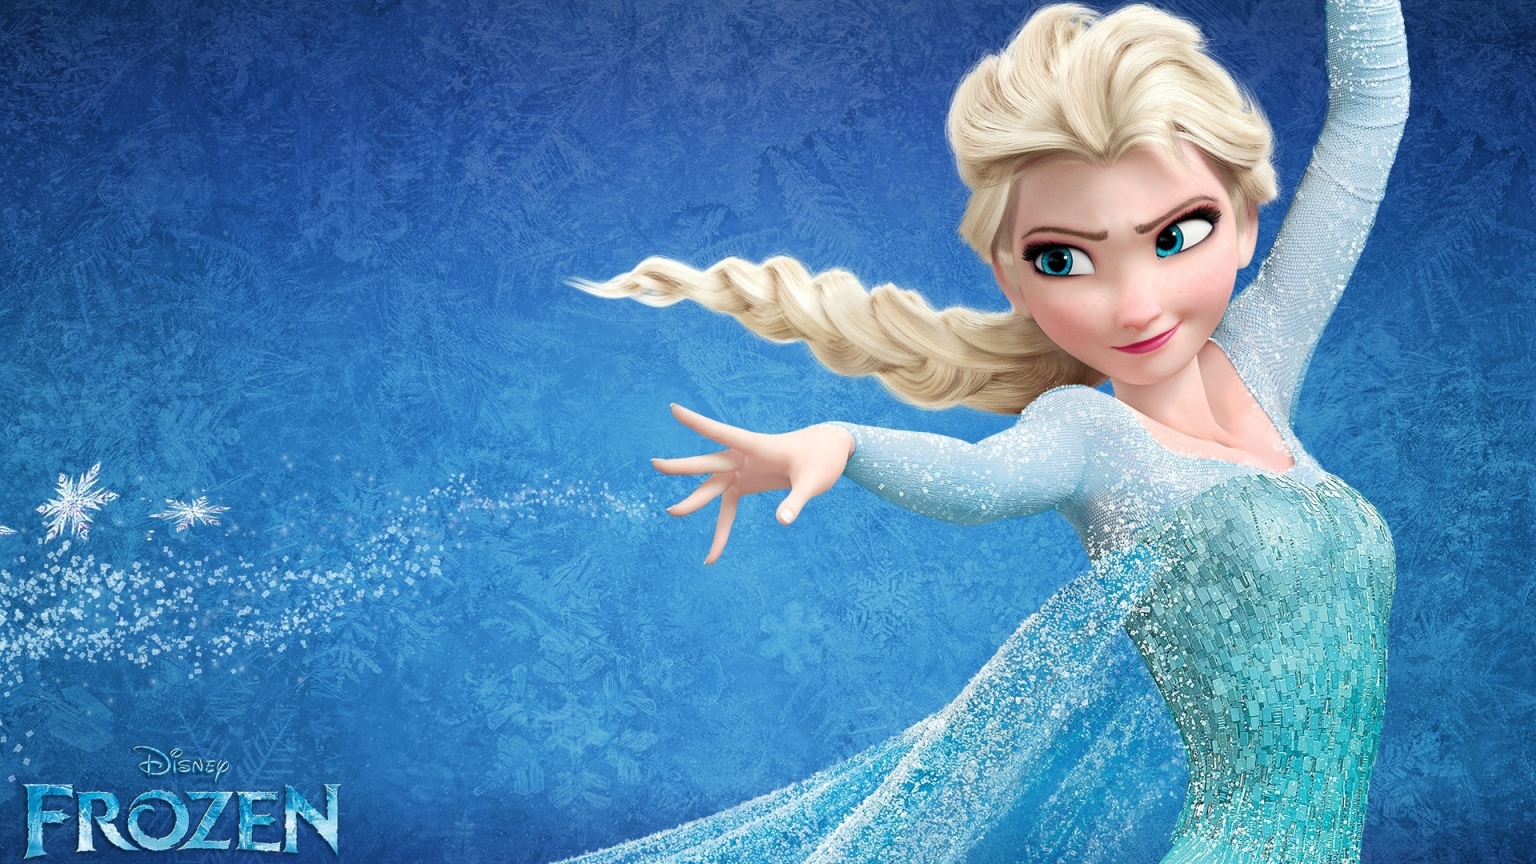 Frozen Elsa for 1536 x 864 HDTV resolution